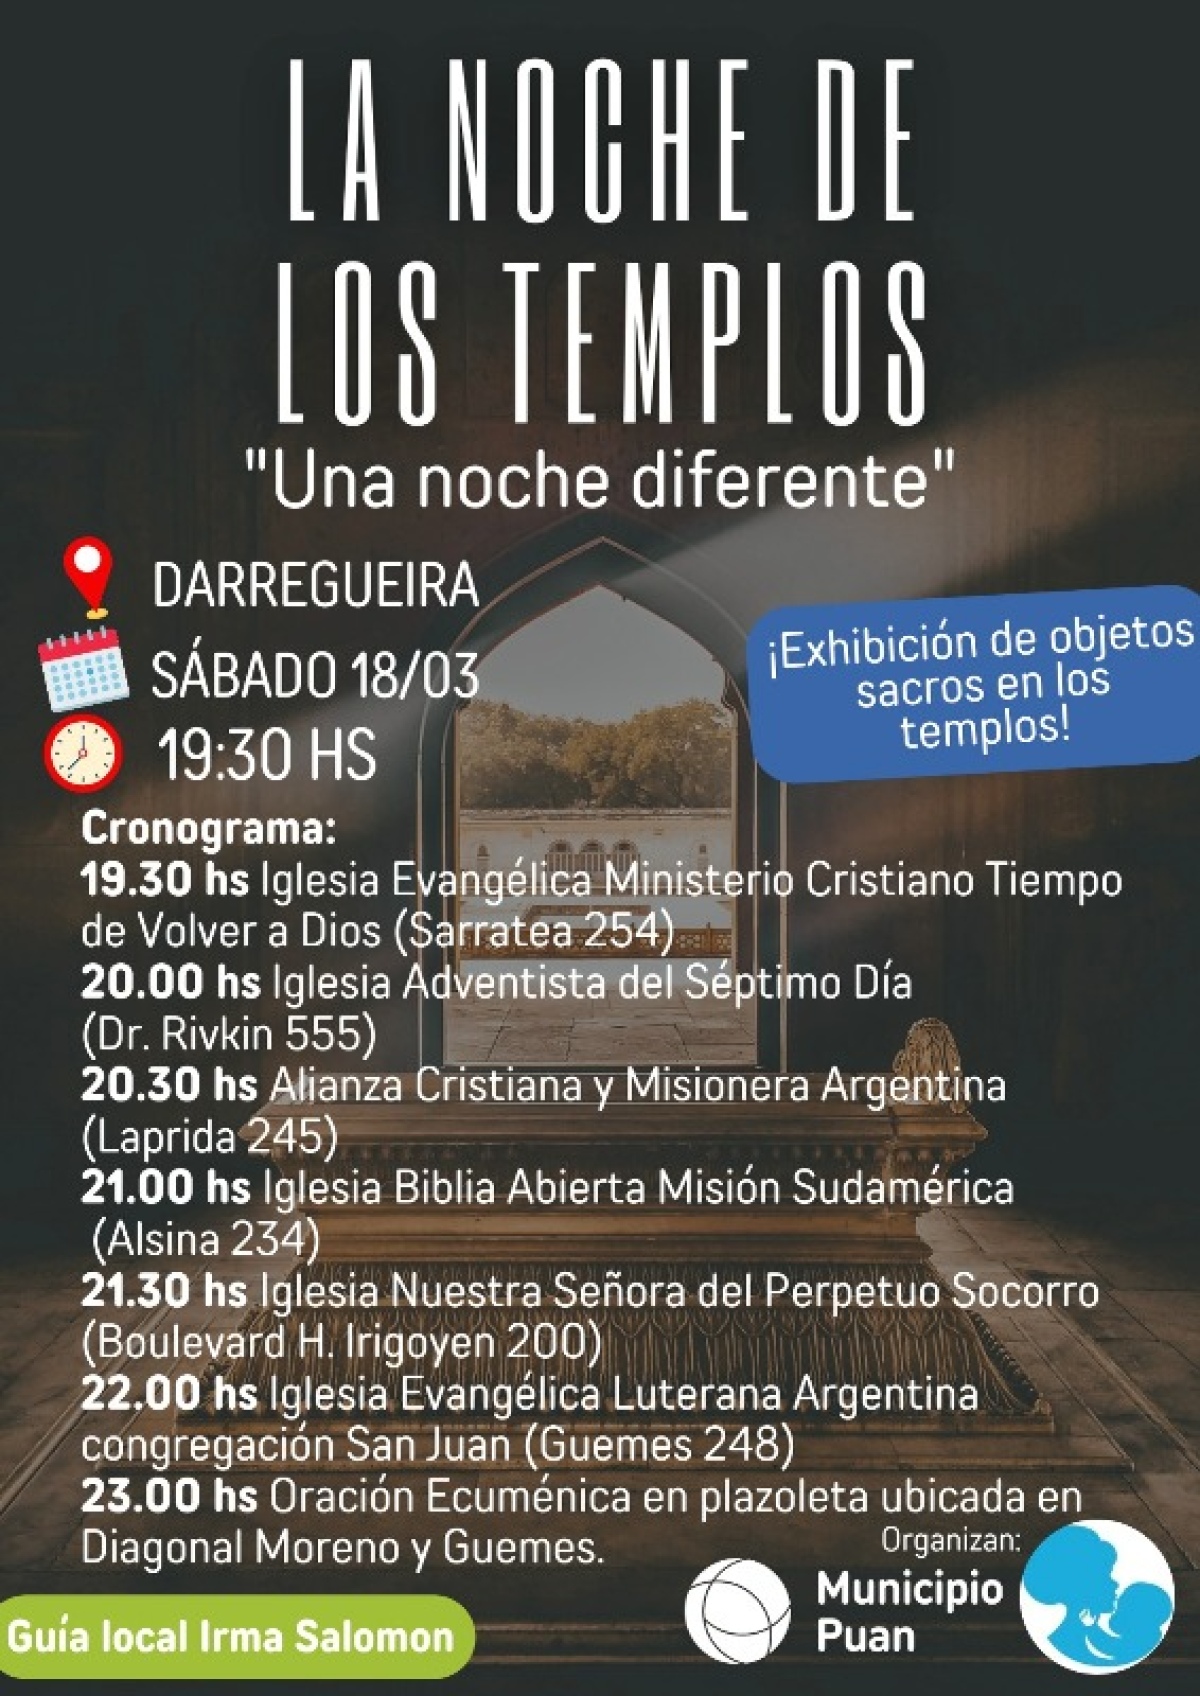 Este sábado: “La Noche de los Templos” en Darregueira